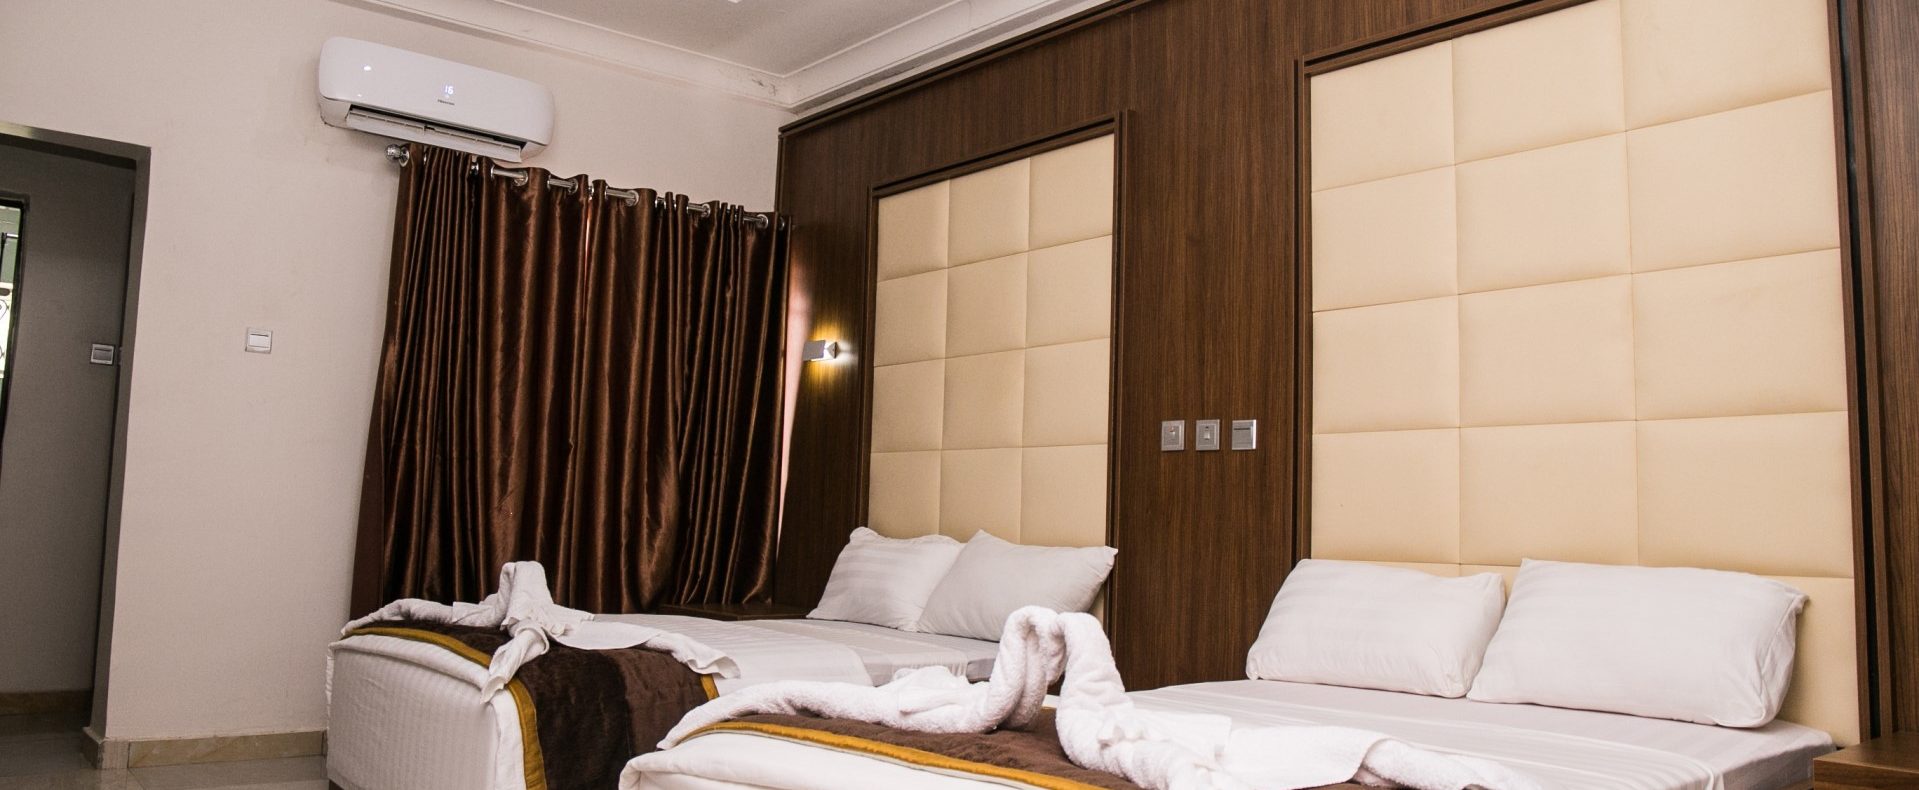 Hotel Twin Bed In Abuja Nigeria